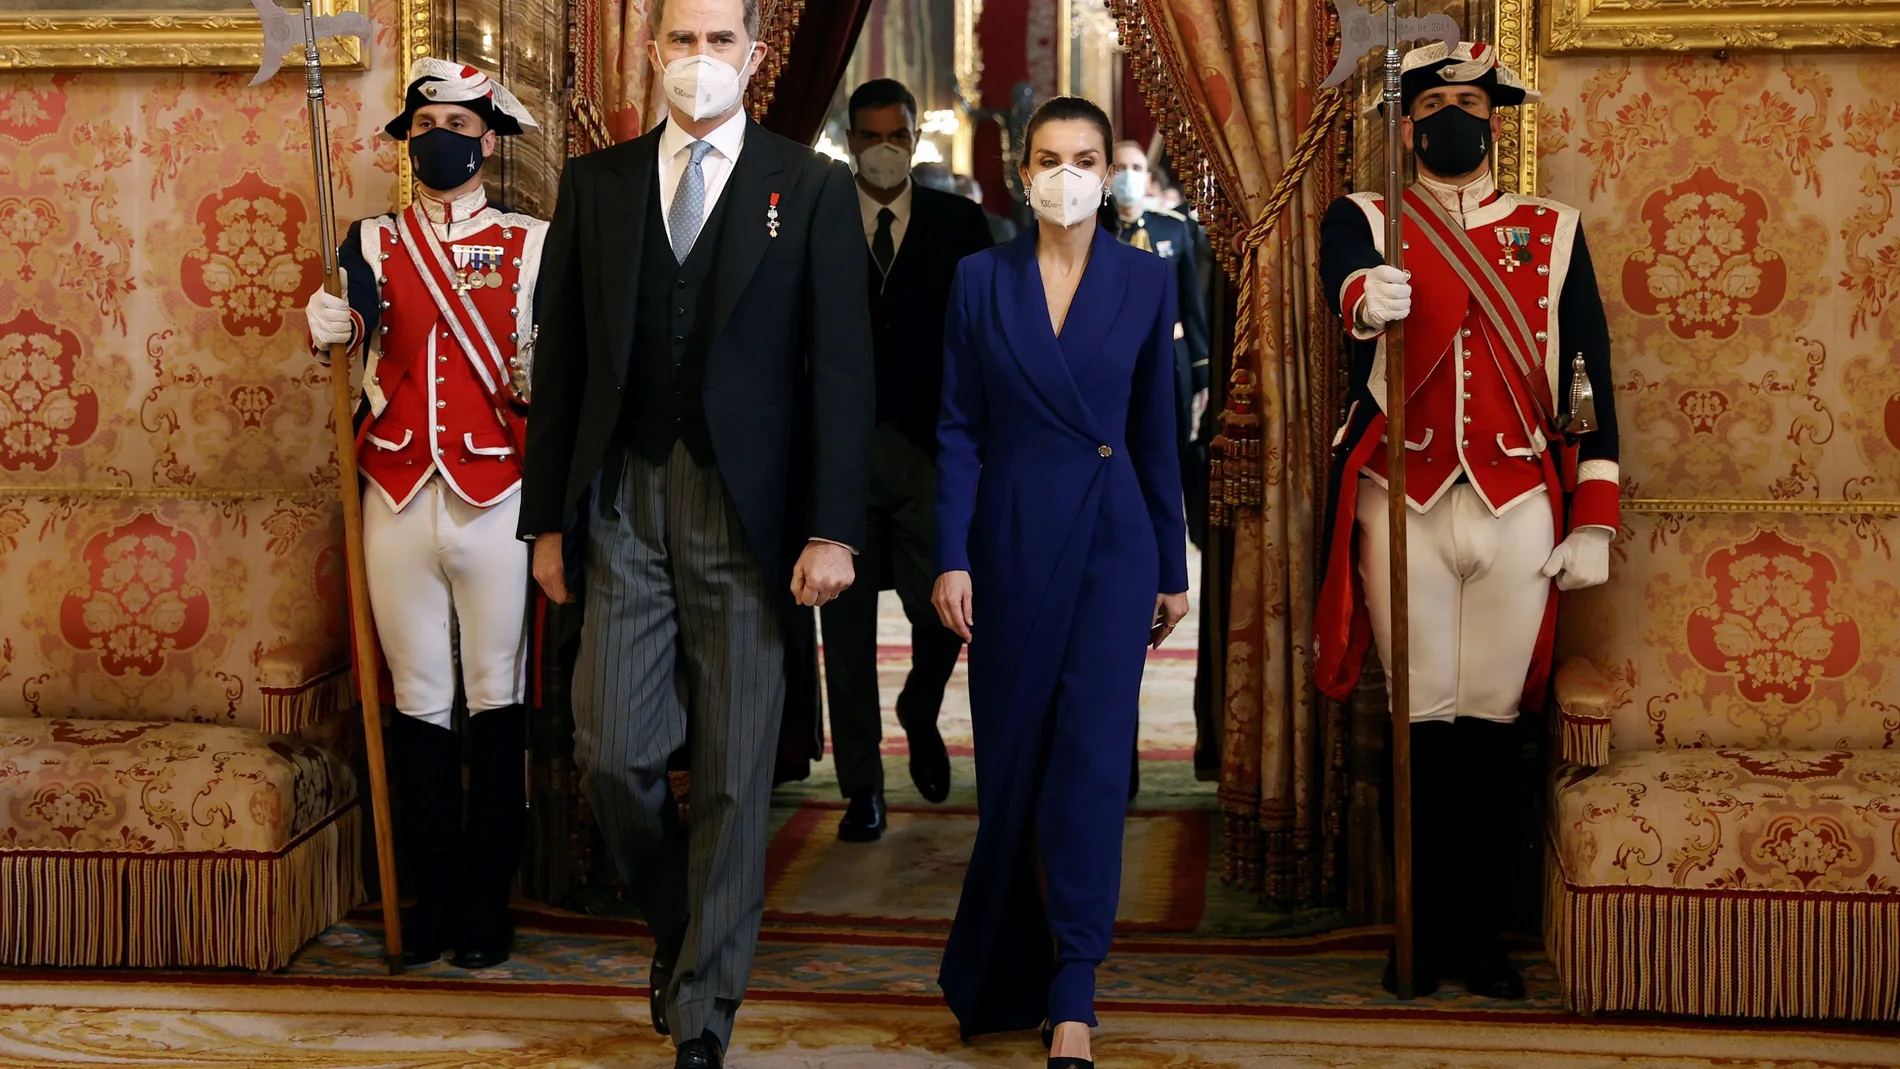 Felipe VI, acompañado de la reina Letizia, preside este jueves en el Palacio Real la tradicional recepción al cuerpo diplomático acreditado en España, que en esta ocasión ha visto reducido el número de invitados a la mitad debido a las restricciones por la pandemia.